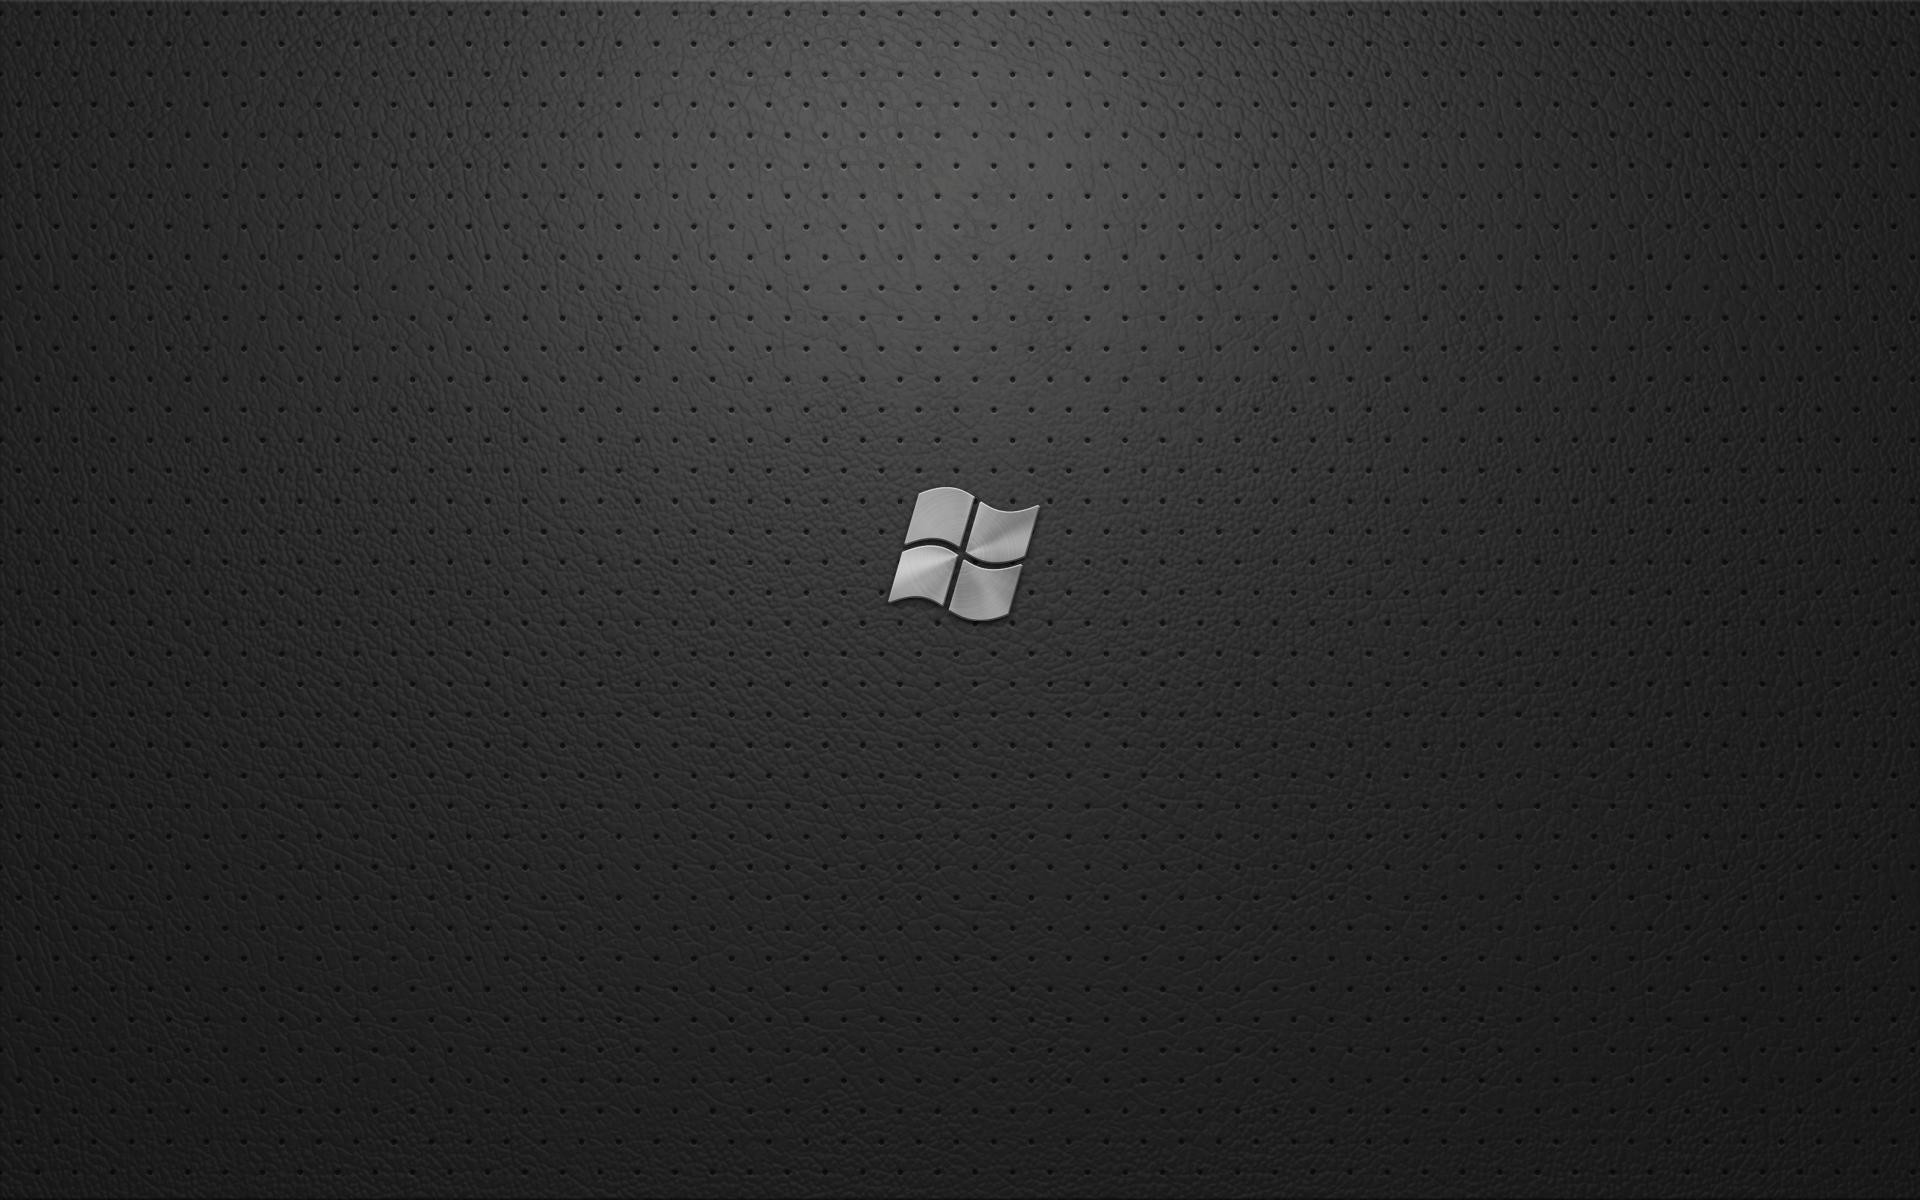 Hình nền đen Windows 7 là một trong những lựa chọn tuyệt vời để khiến cho màn hình desktop trở nên vô cùng hoàn hảo, trang nhã và lịch lãm. Không còn những chi tiết lung linh hay quá phức tạp, mà chỉ còn màu đen đơn giản nhưng đầy ấn tượng, giúp bạn tập trung hơn vào công việc hay giải trí.